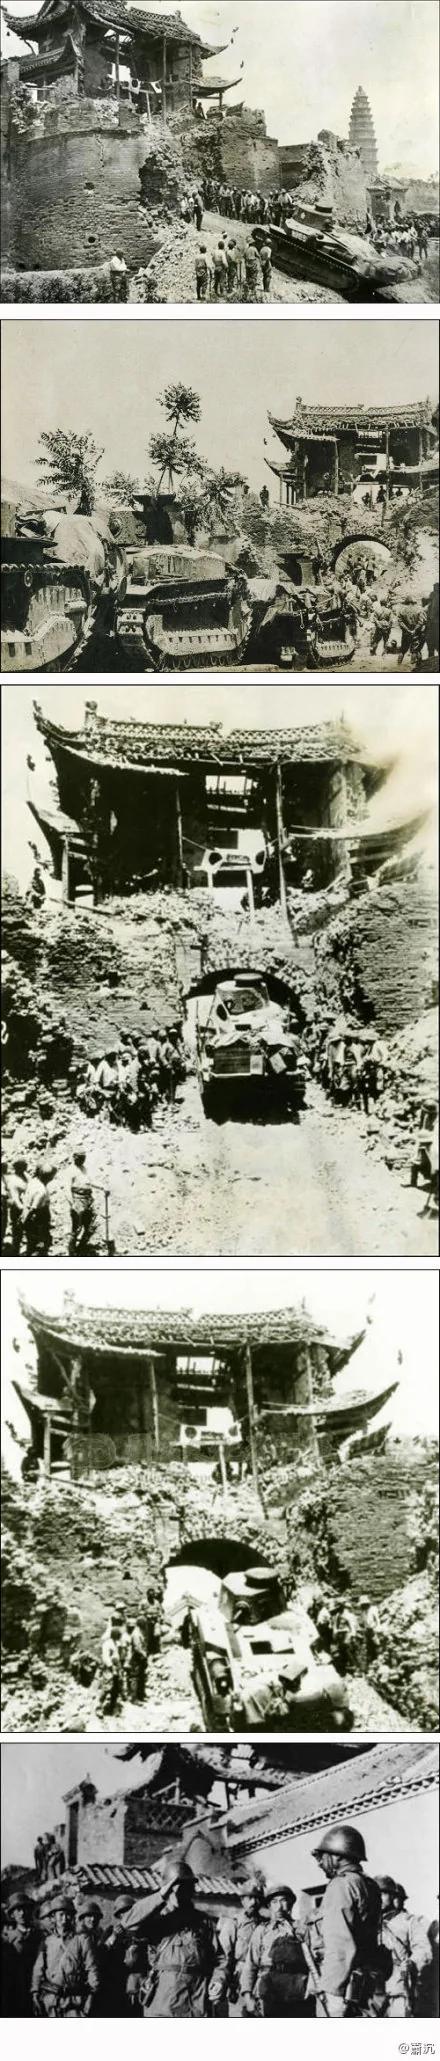 珍贵旧影 1938年日军仓林部队攻陷安徽蒙城